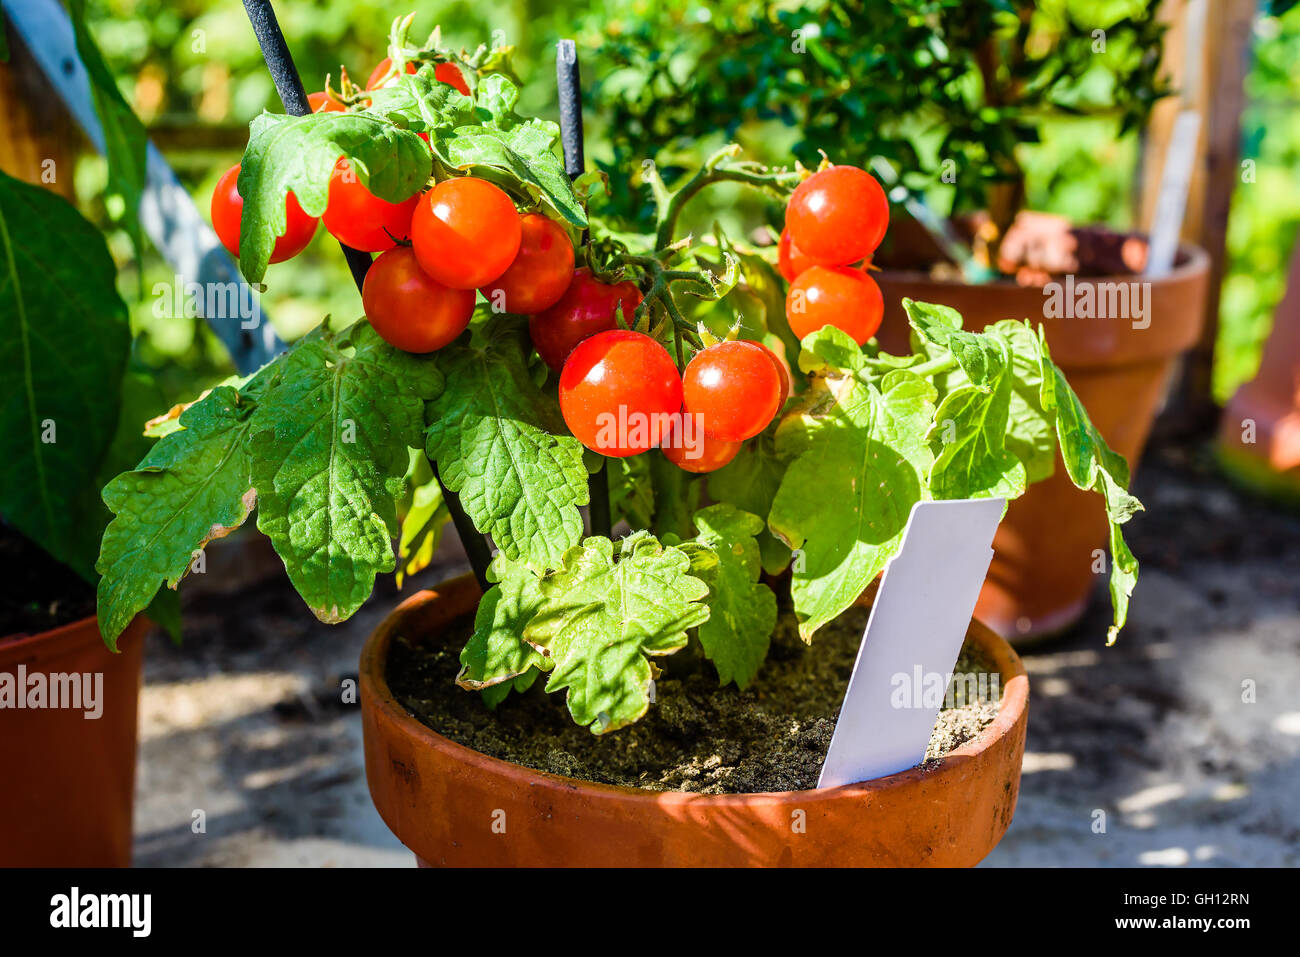 Adorable pequeño tomate cherry con plantas maduras y sabrosos tomates. Blanco marcador vacío en el recipiente. Foto de stock